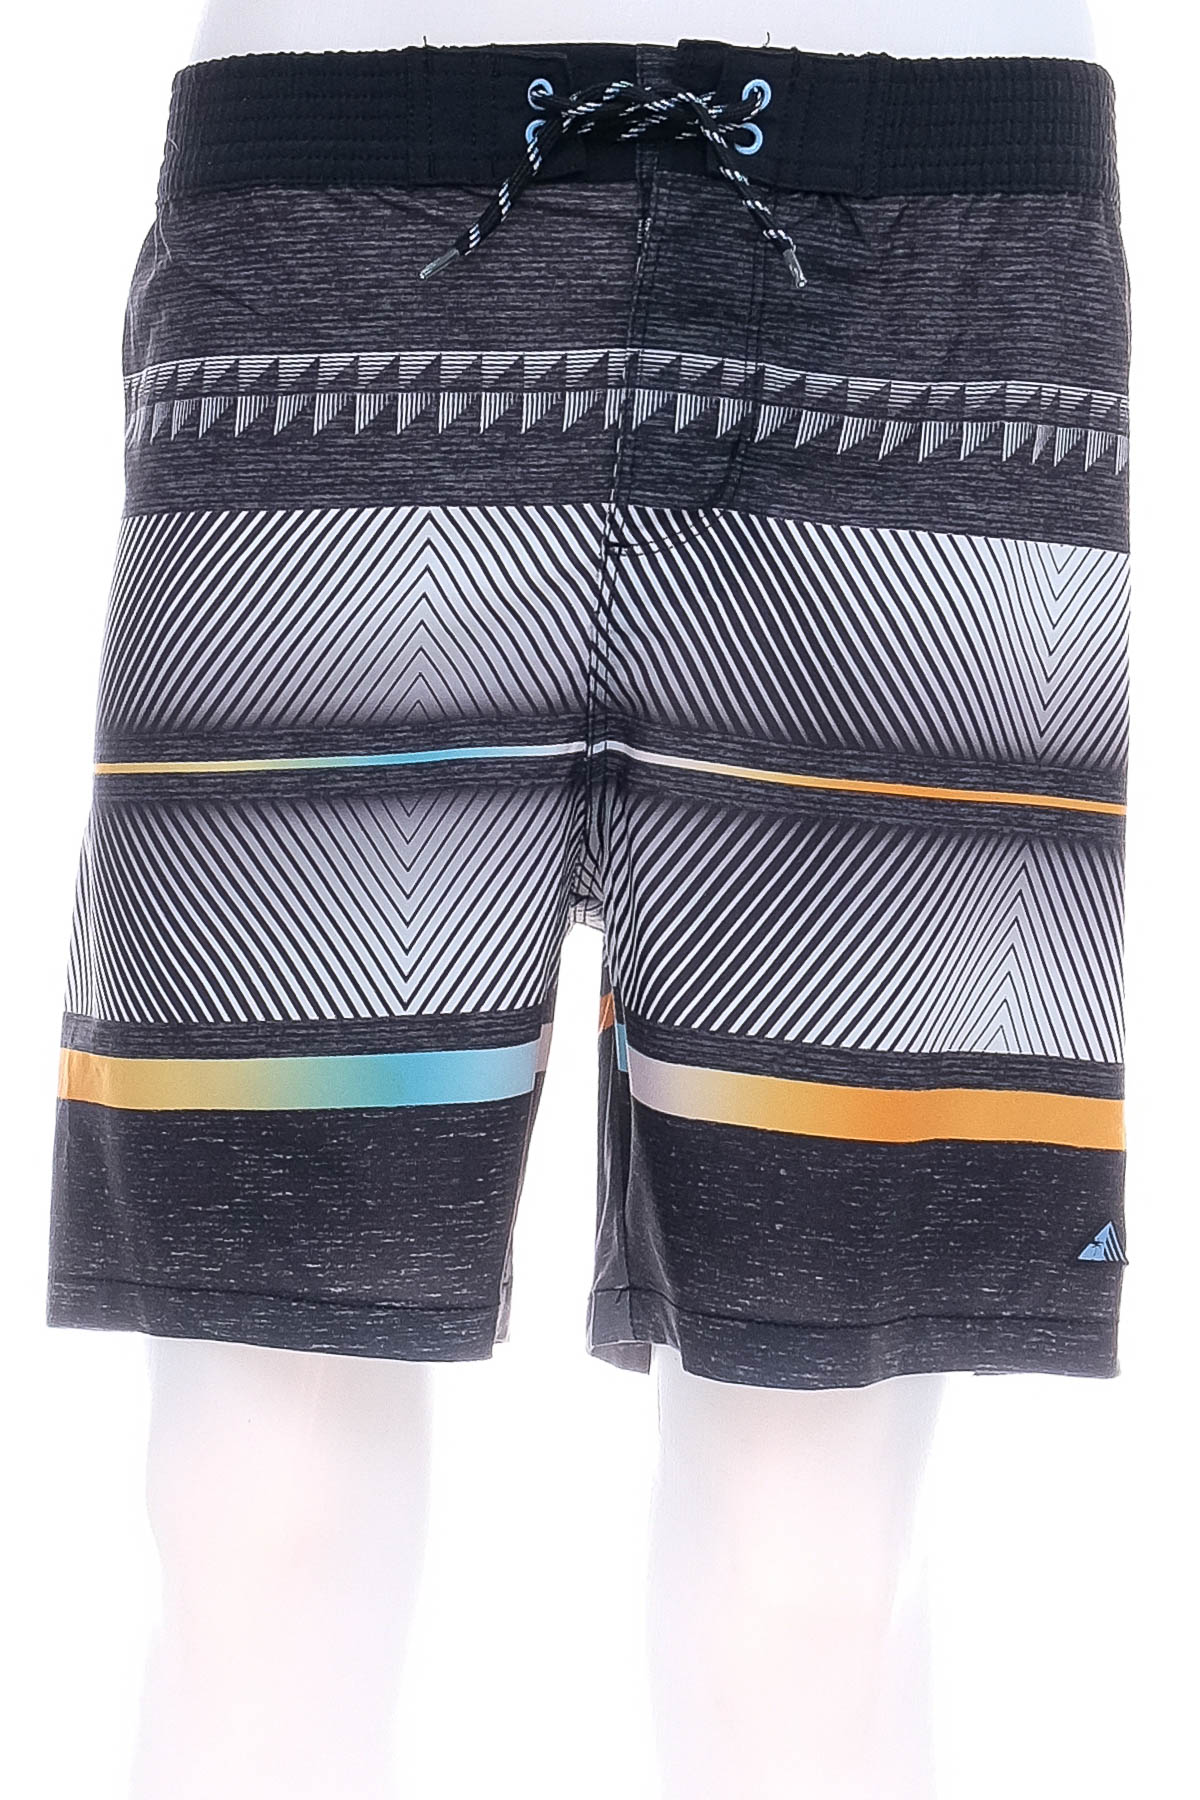 Men's shorts - Target - 0